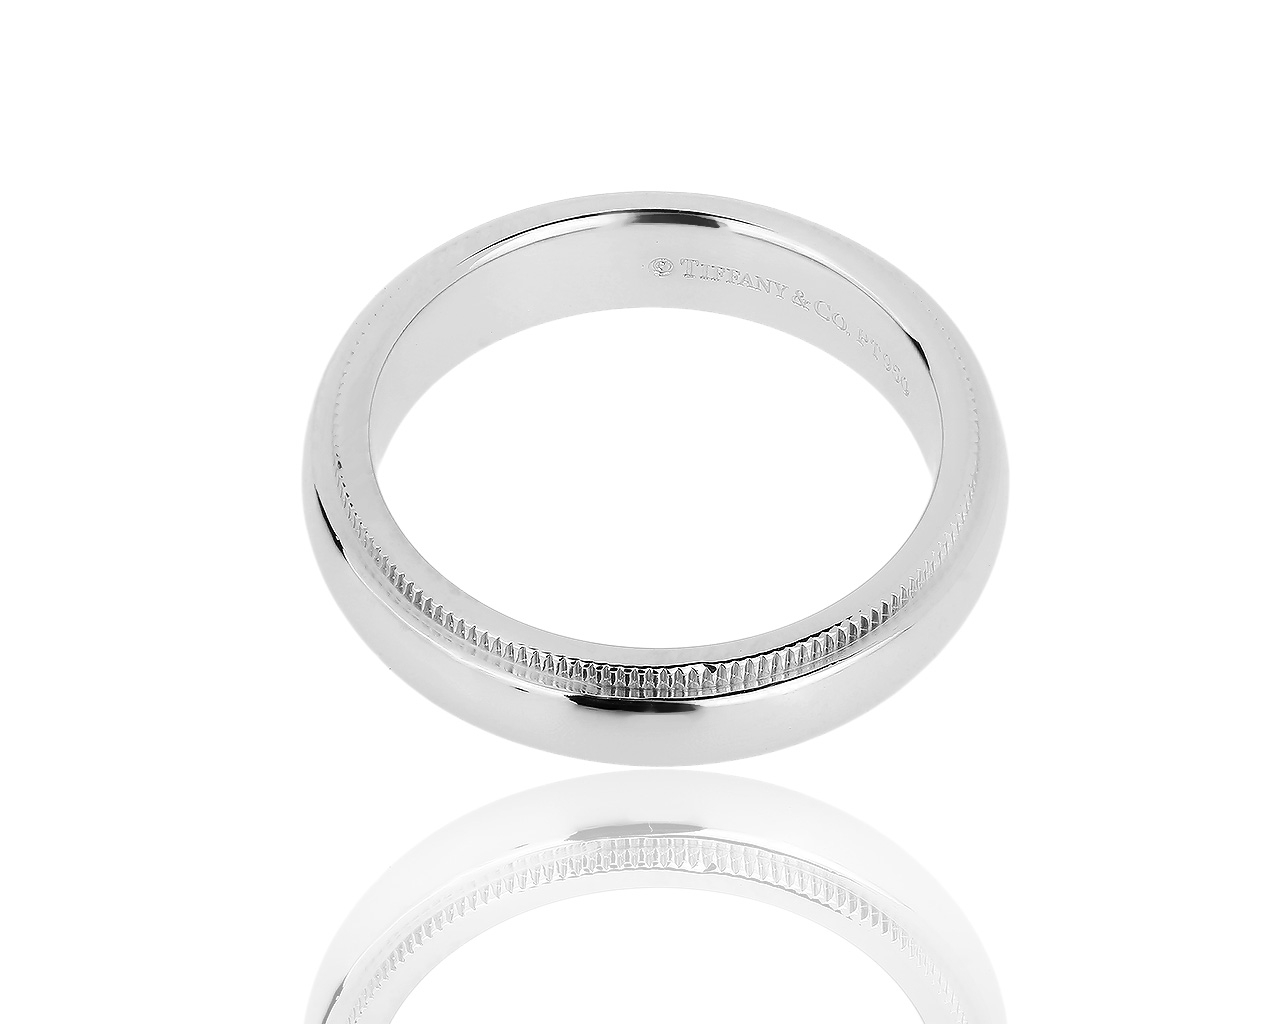 Идеальное платиновое кольцо Tiffany&Co Millgrain